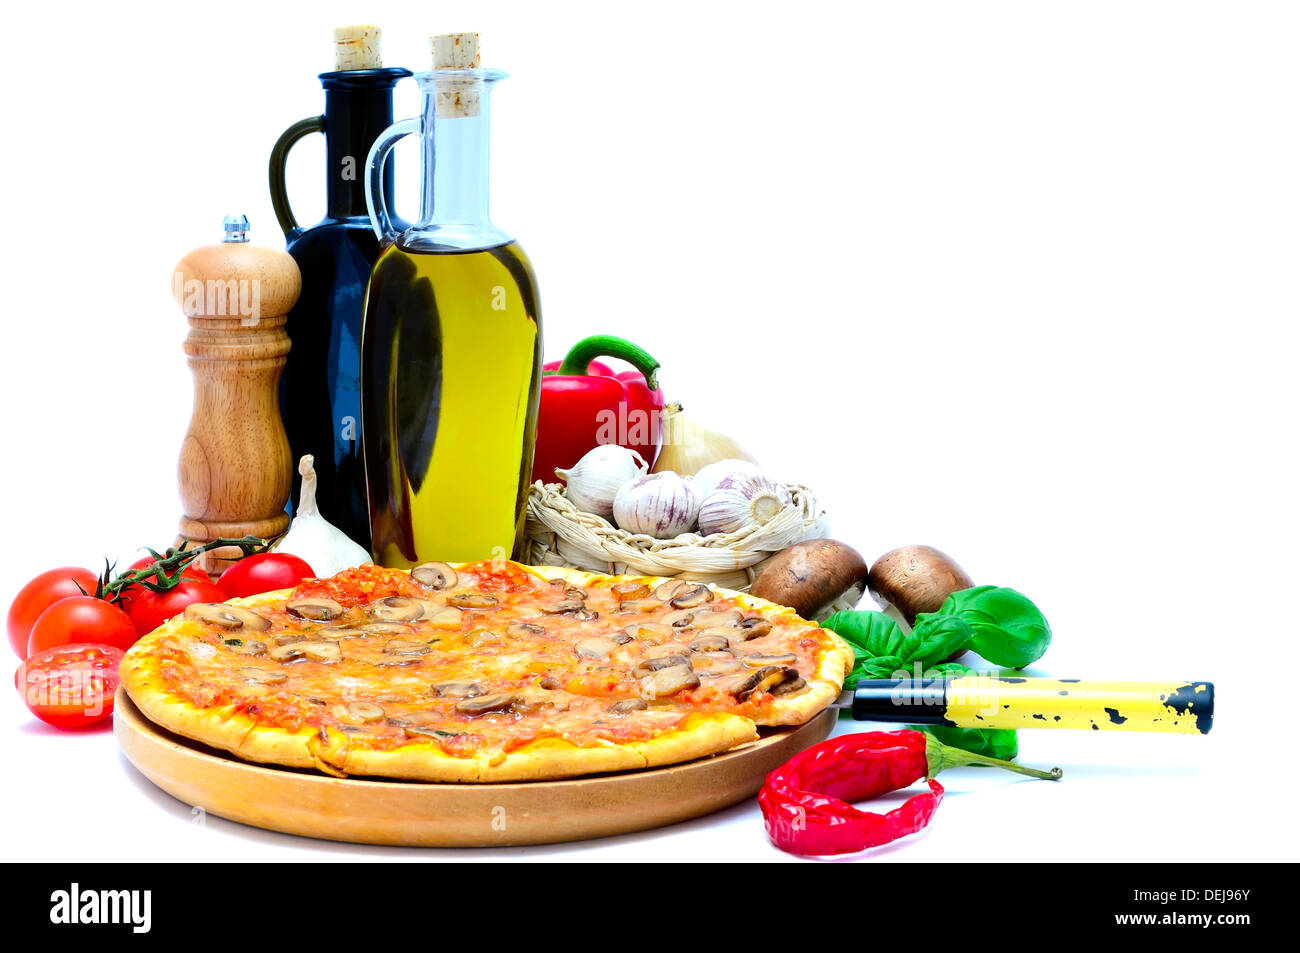 Tradizionale pizza italiana e ingredienti alimentari isolati su sfondo bianco Foto Stock